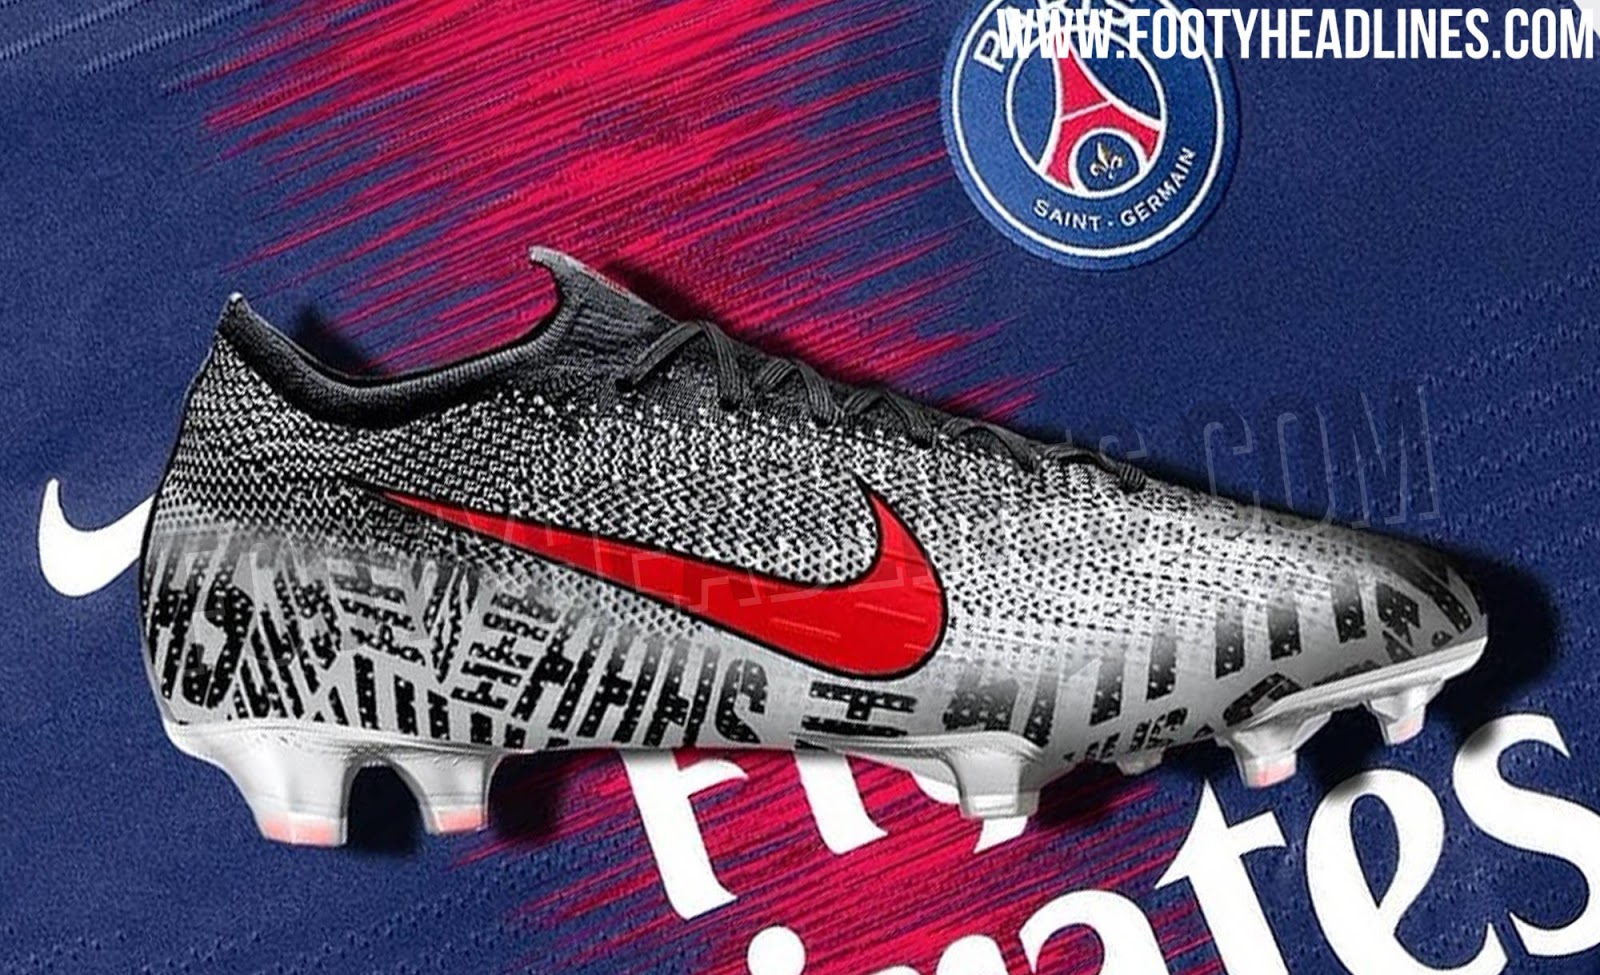 neymar jr football boots 2019